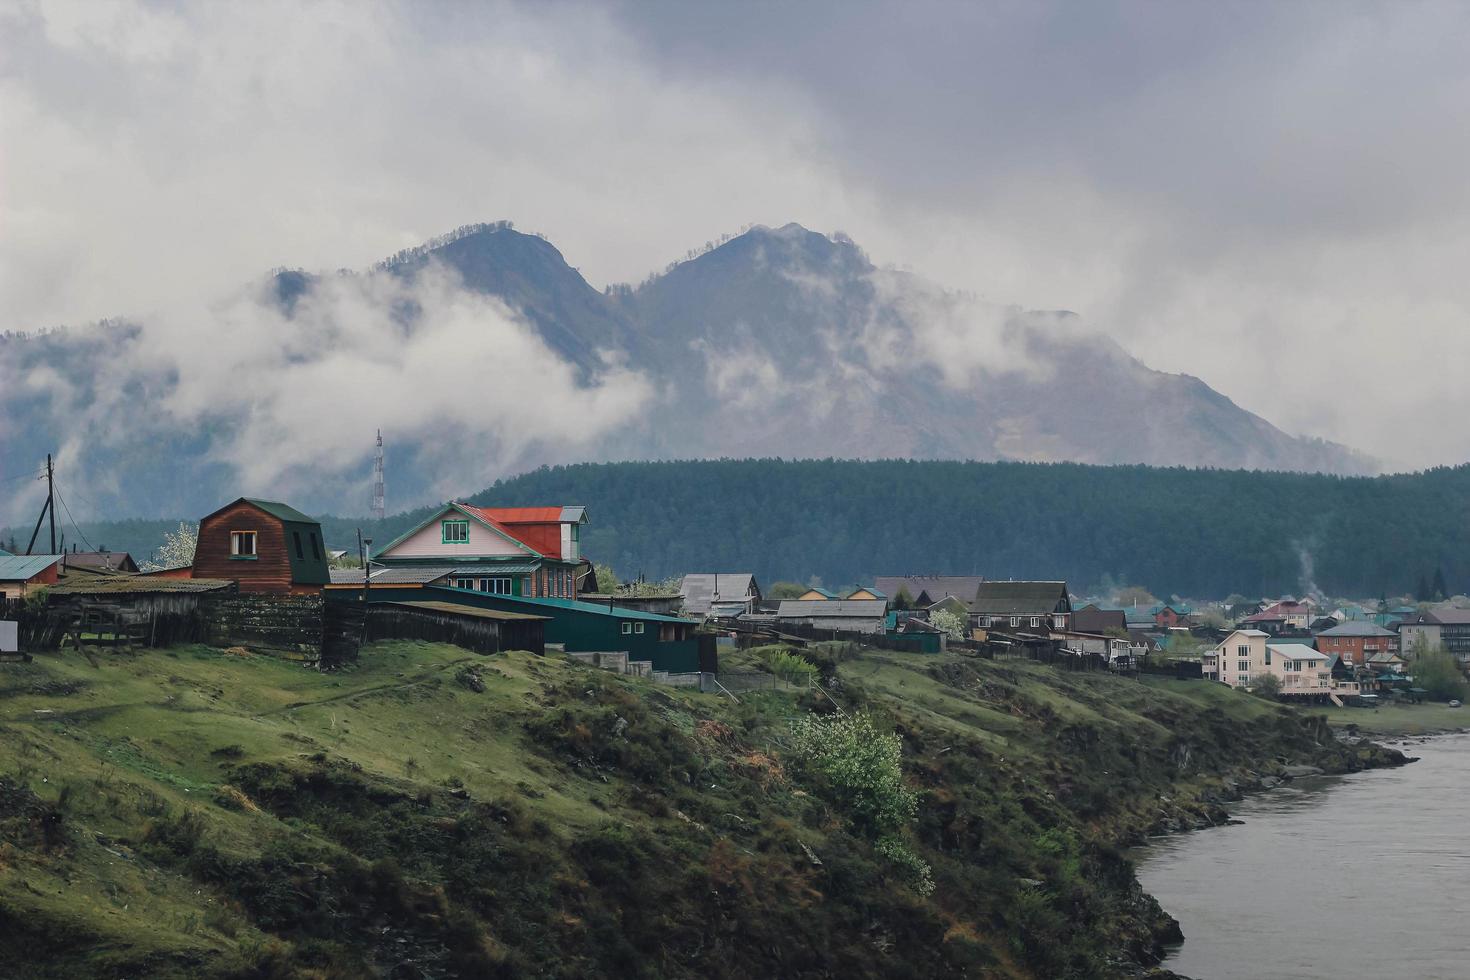 aldeia perto do rio na montanha arborizada de fundo em nevoeiro e nuvem. bela paisagem com floresta de abetos em denso nevoeiro foto